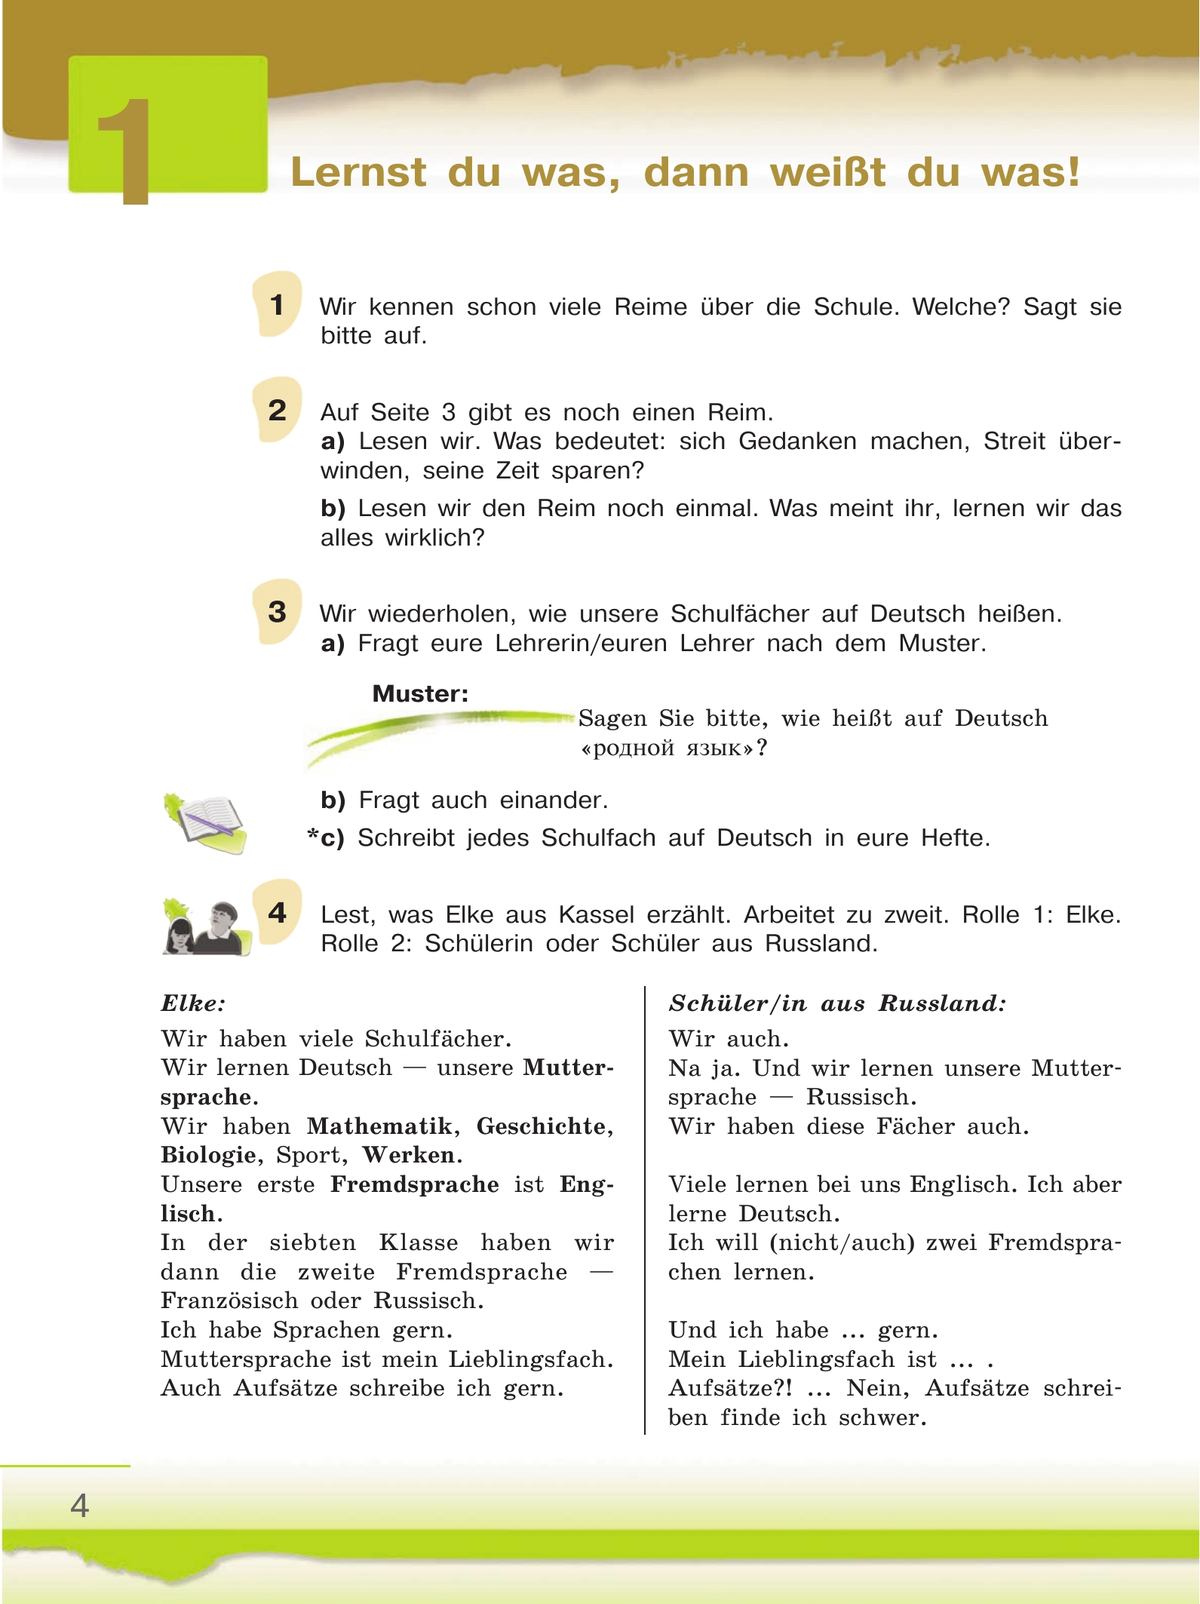 Немецкий язык. 6 класс. Учебник. В 2 ч. Часть 2 3